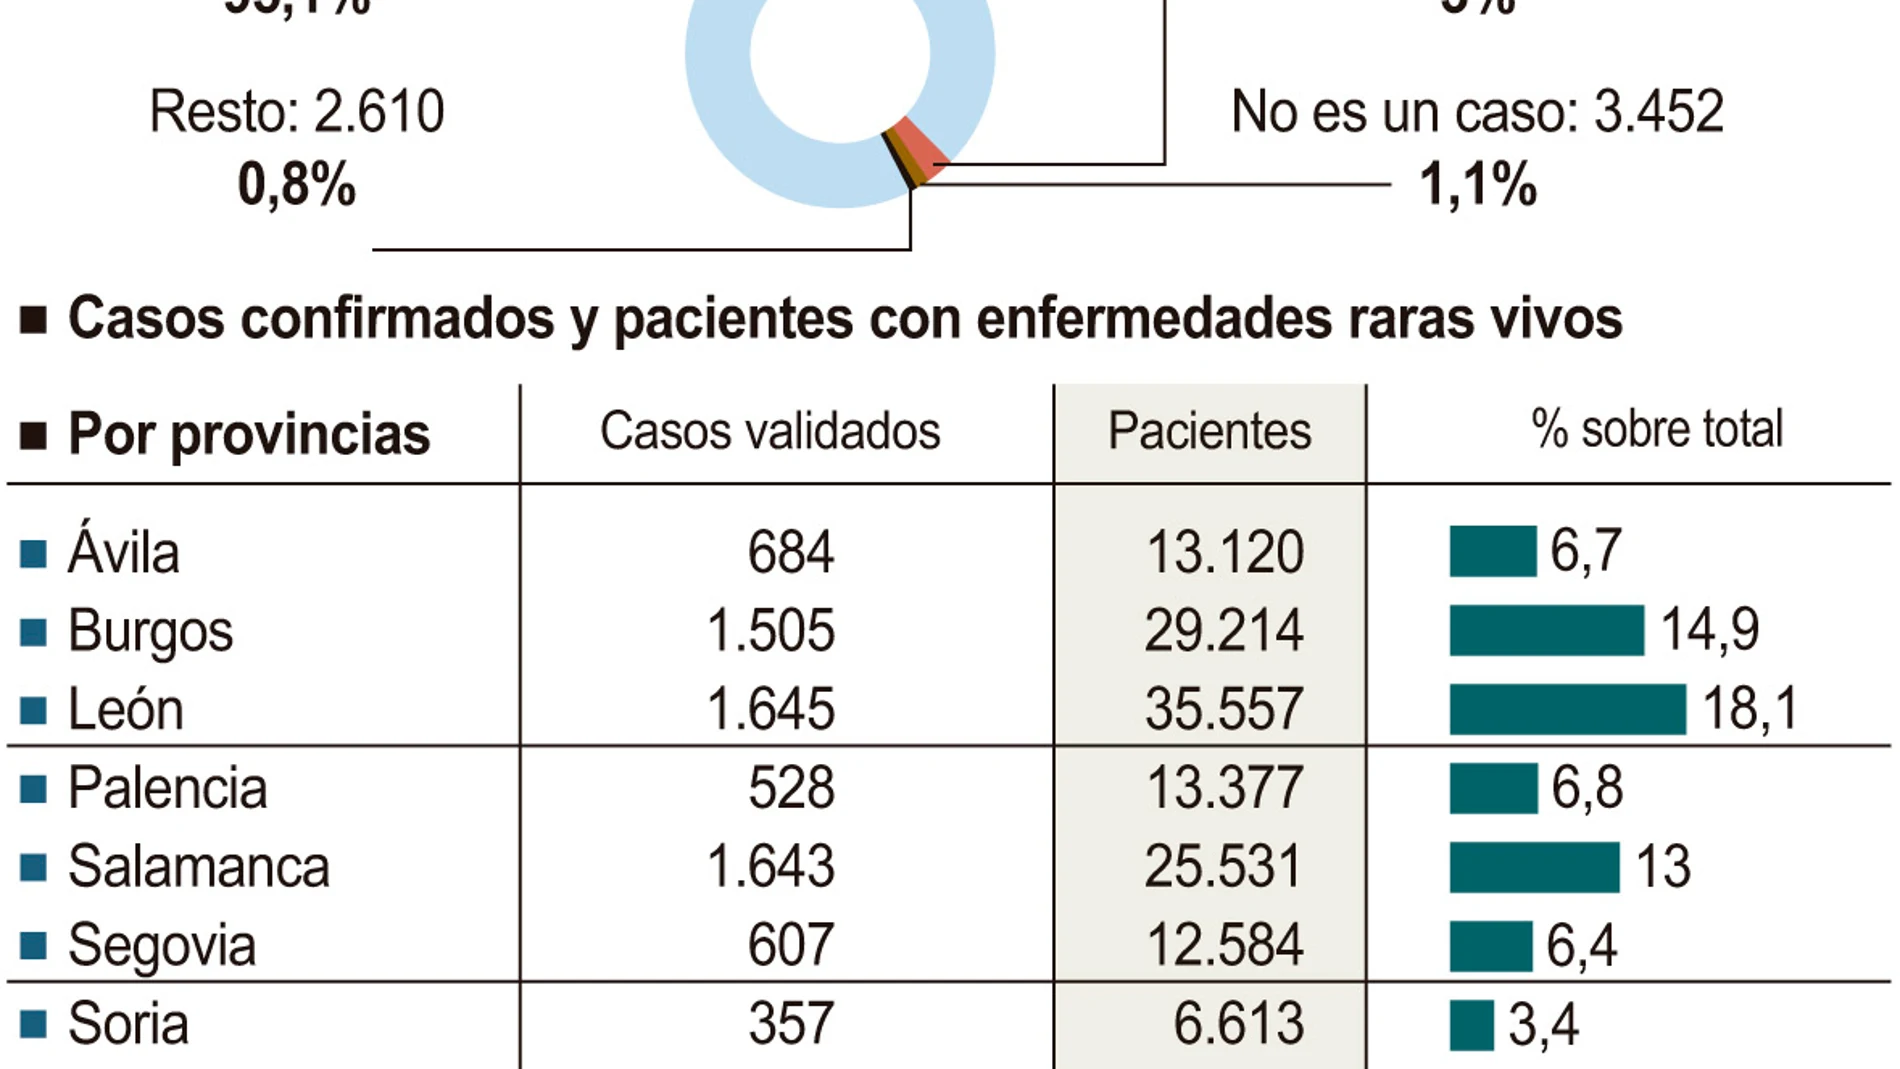 Enfermedades raras en Castilla y León